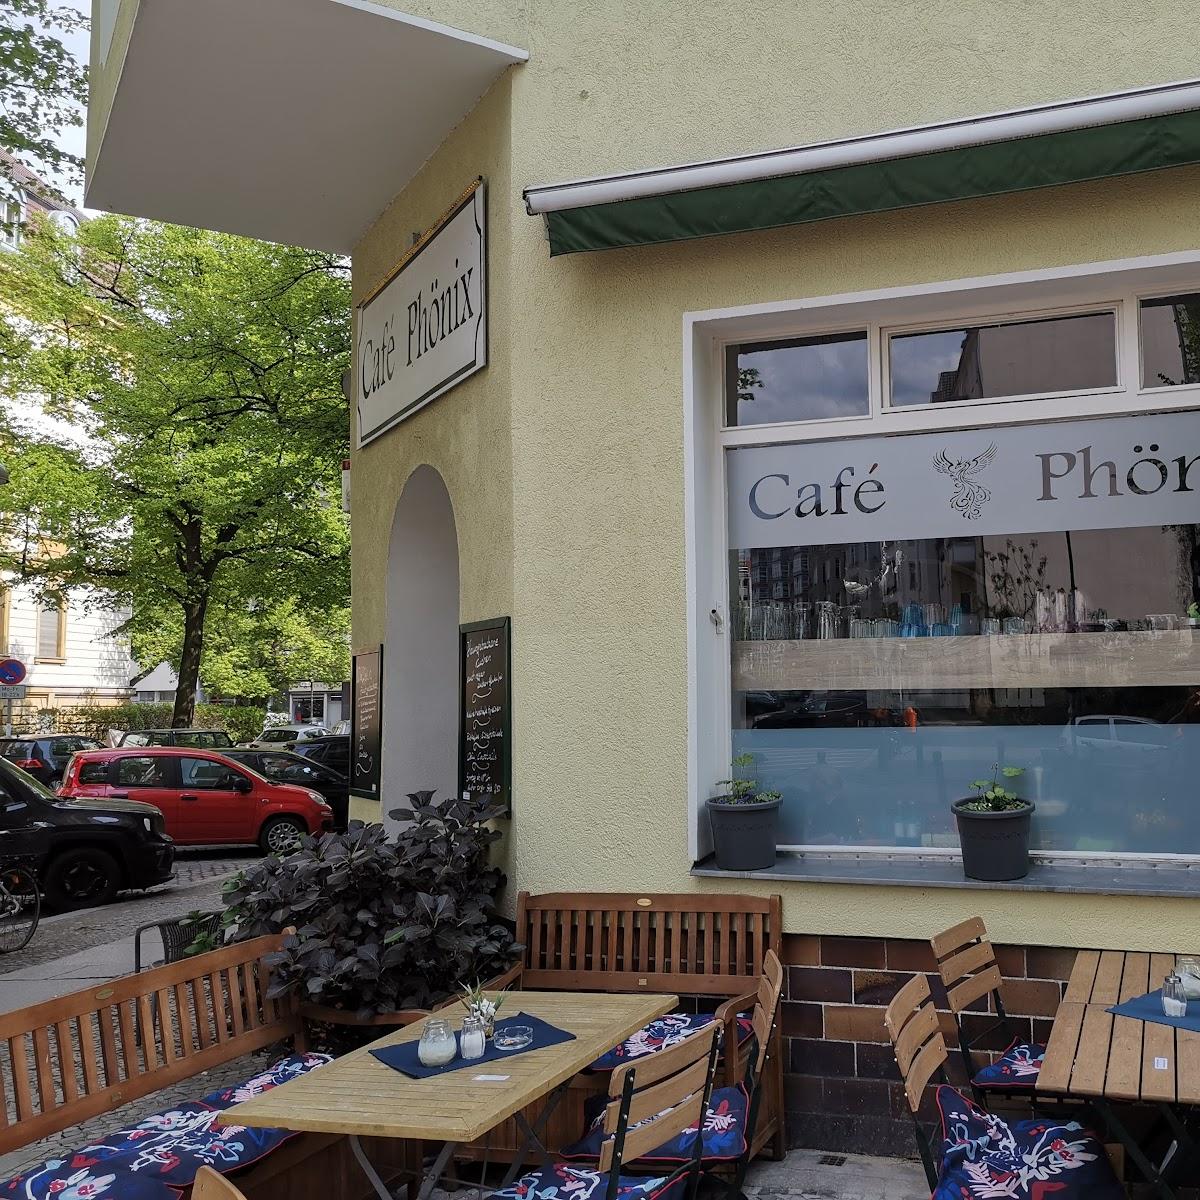 Restaurant "Café Phönix" in Berlin